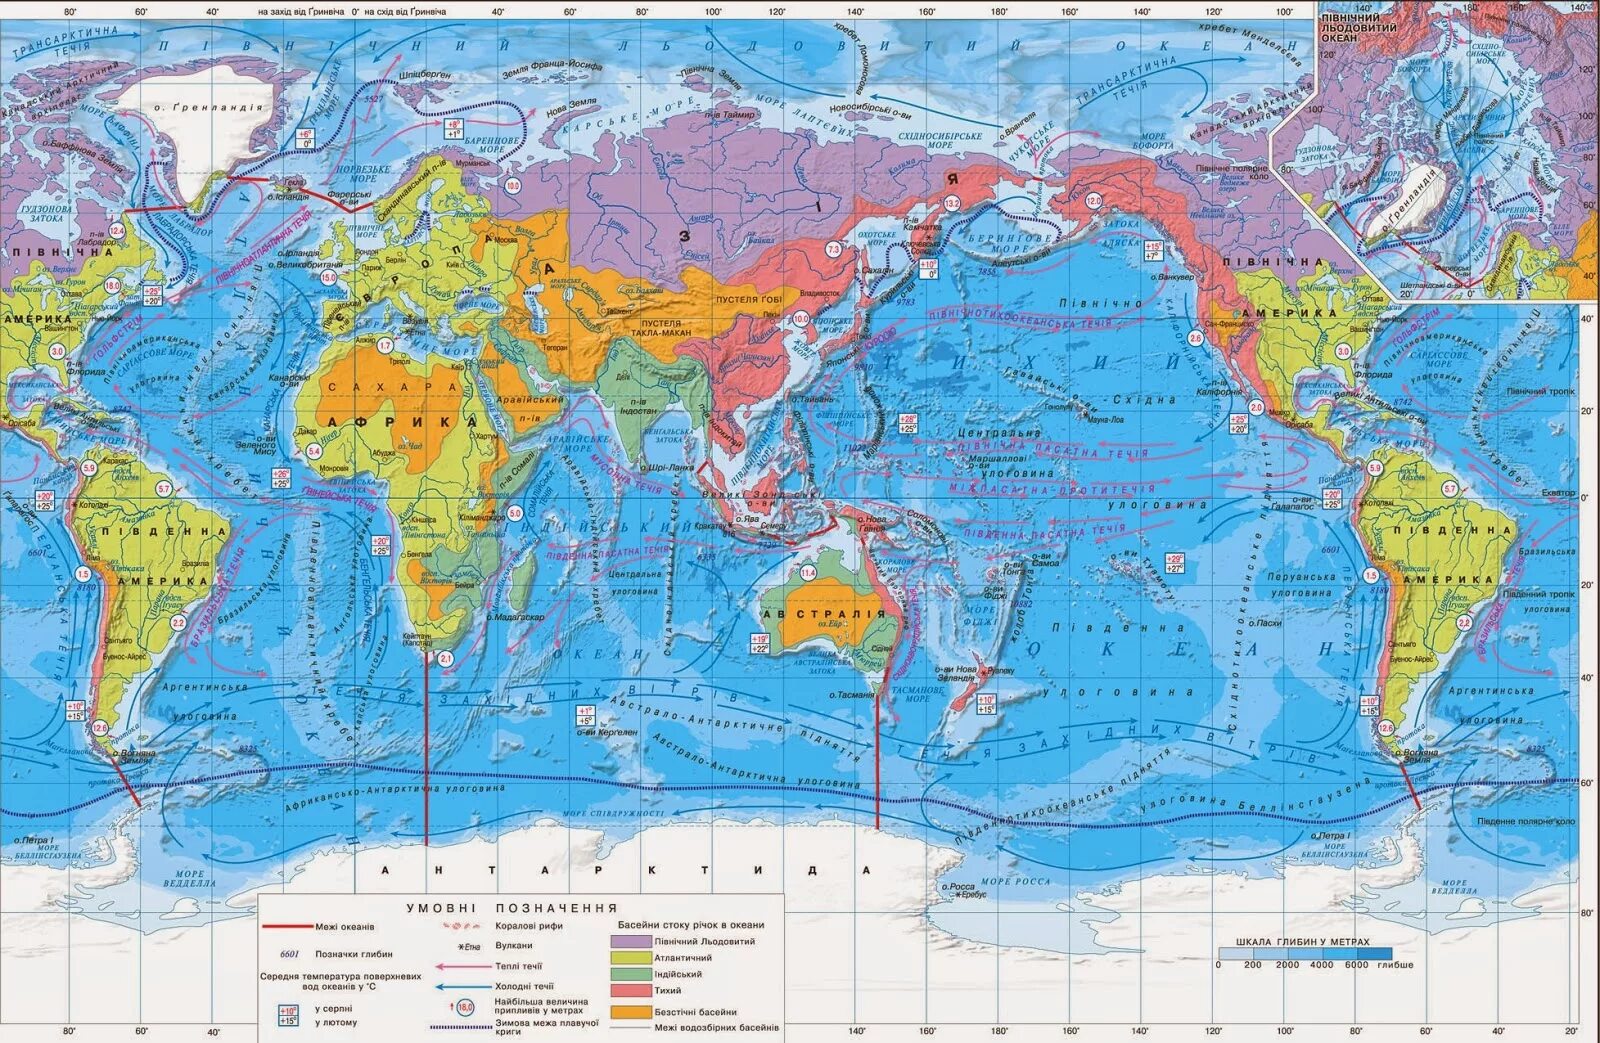 Что можно увидеть на карте. Моря мирового океана на карте. Проливы Тихого океана на карте. Карта мировоготокеана.